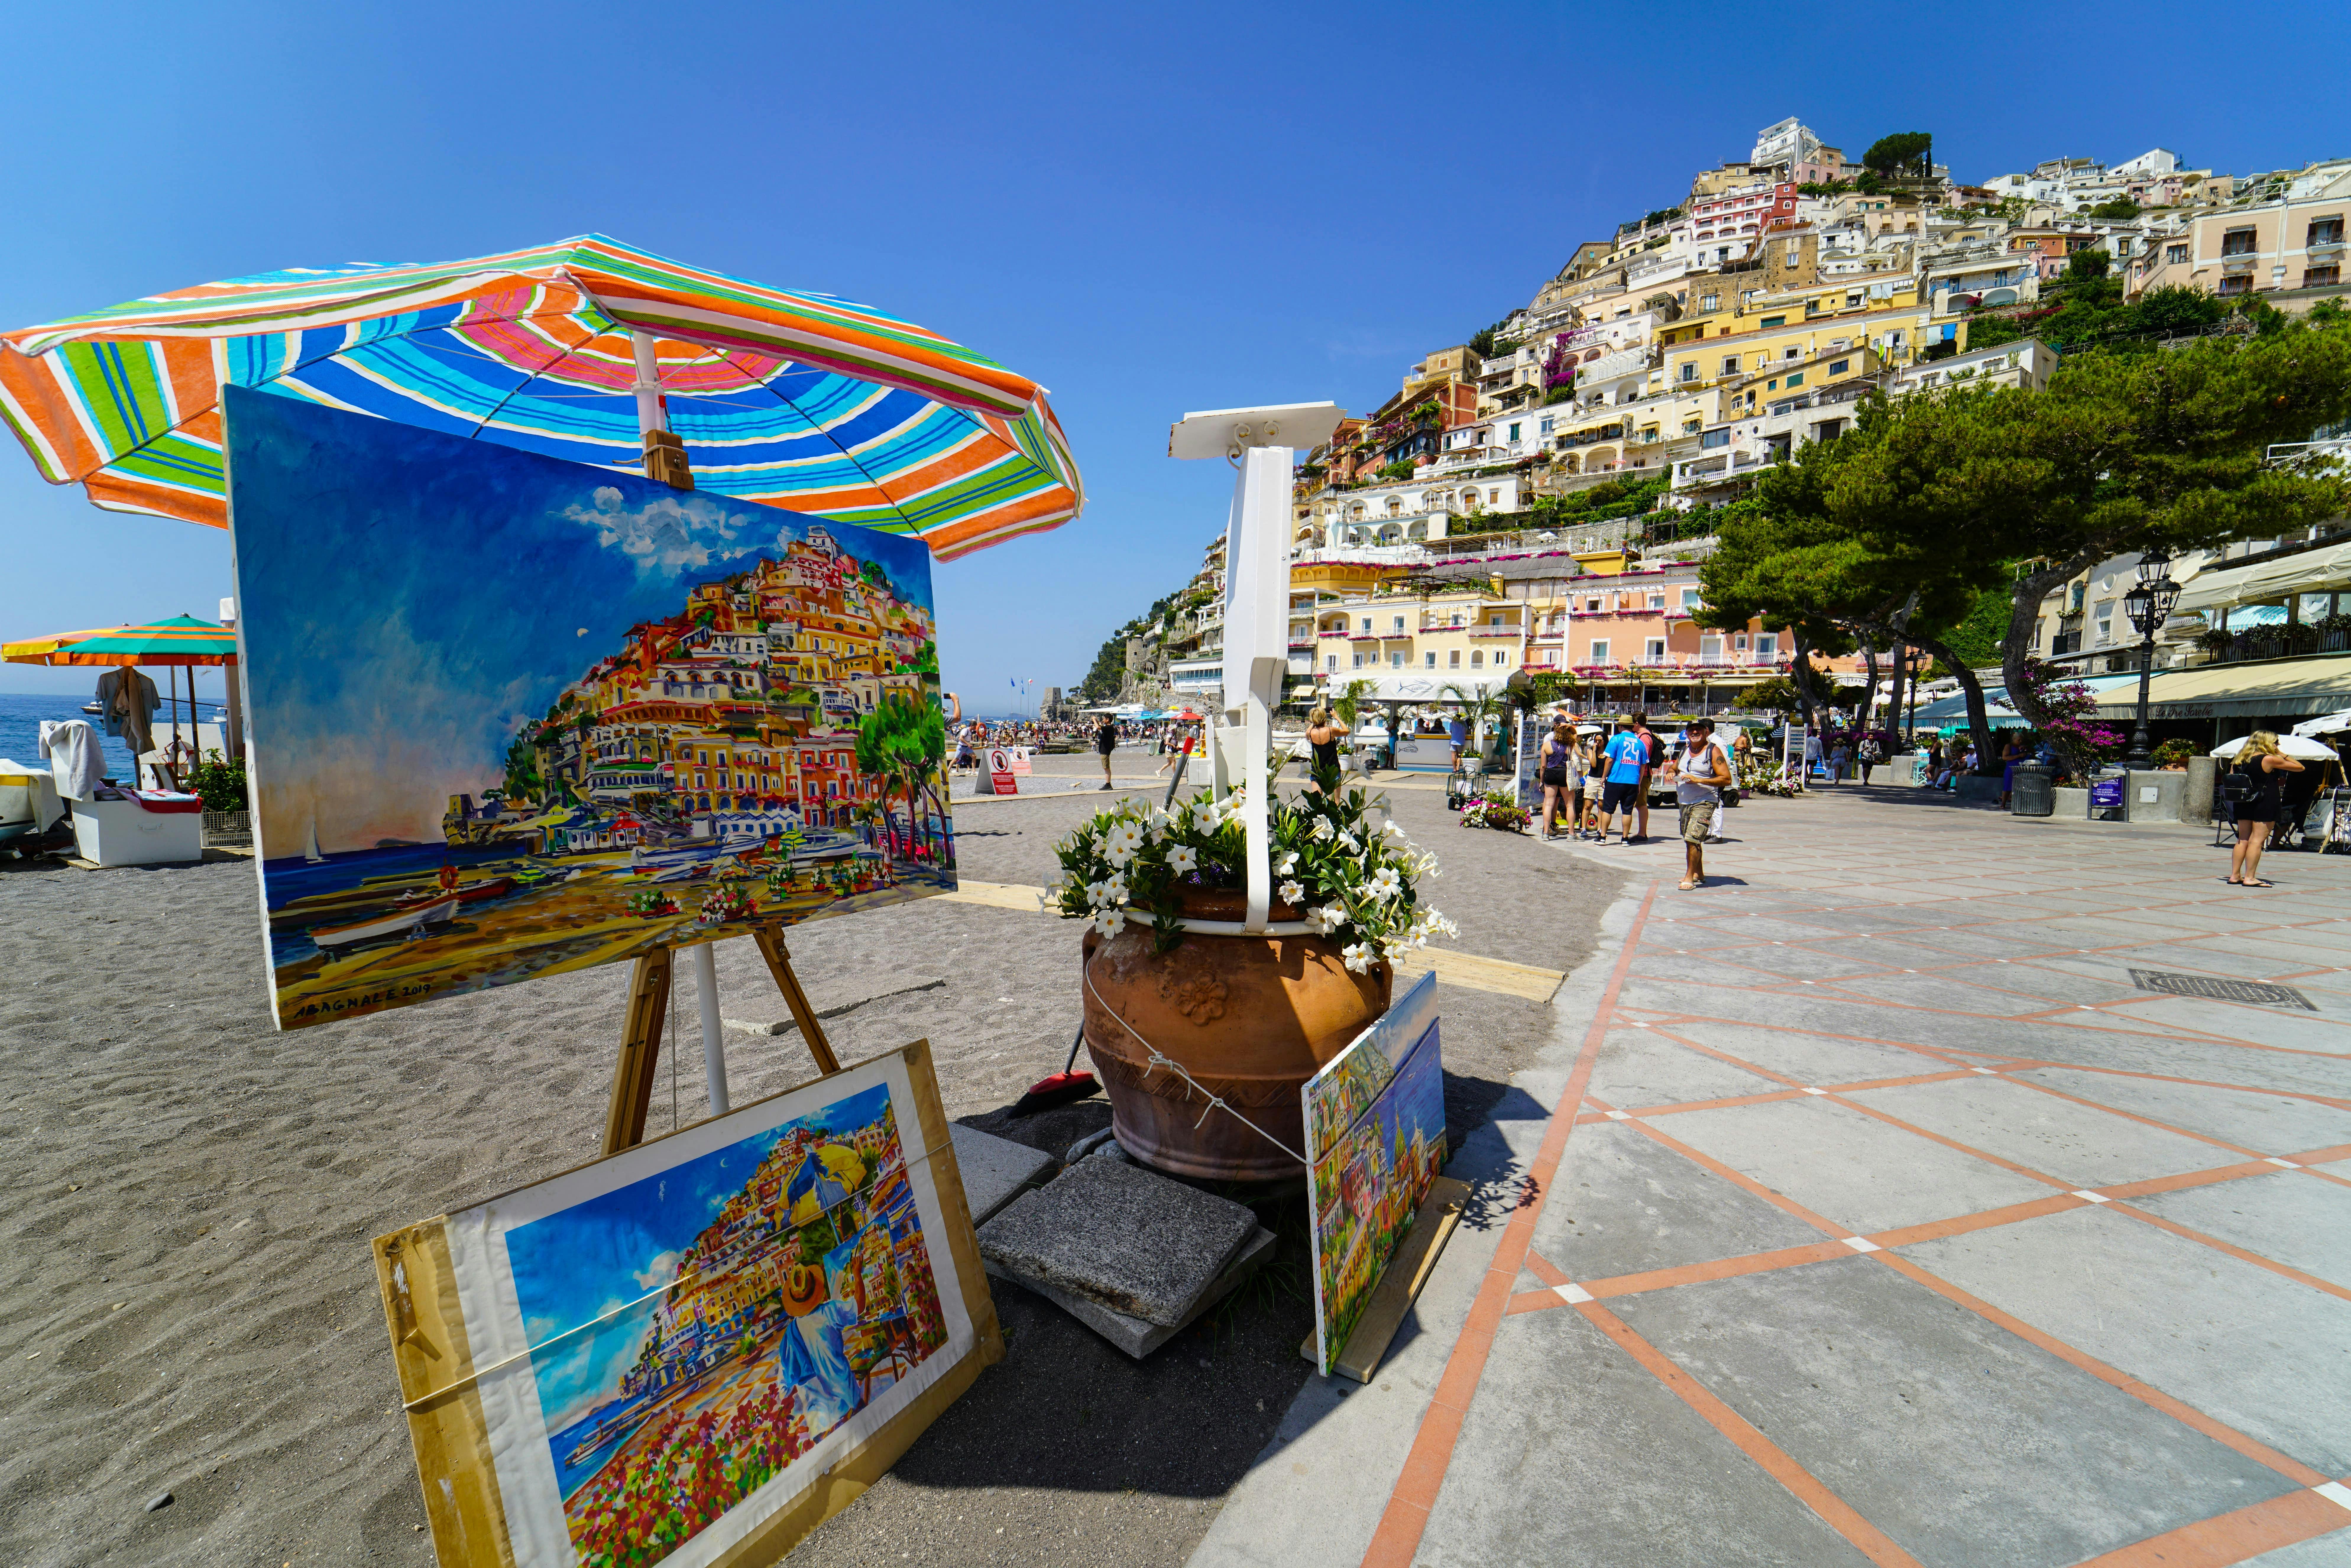 Amalfi Coast, Positano and Ravello tour from Naples